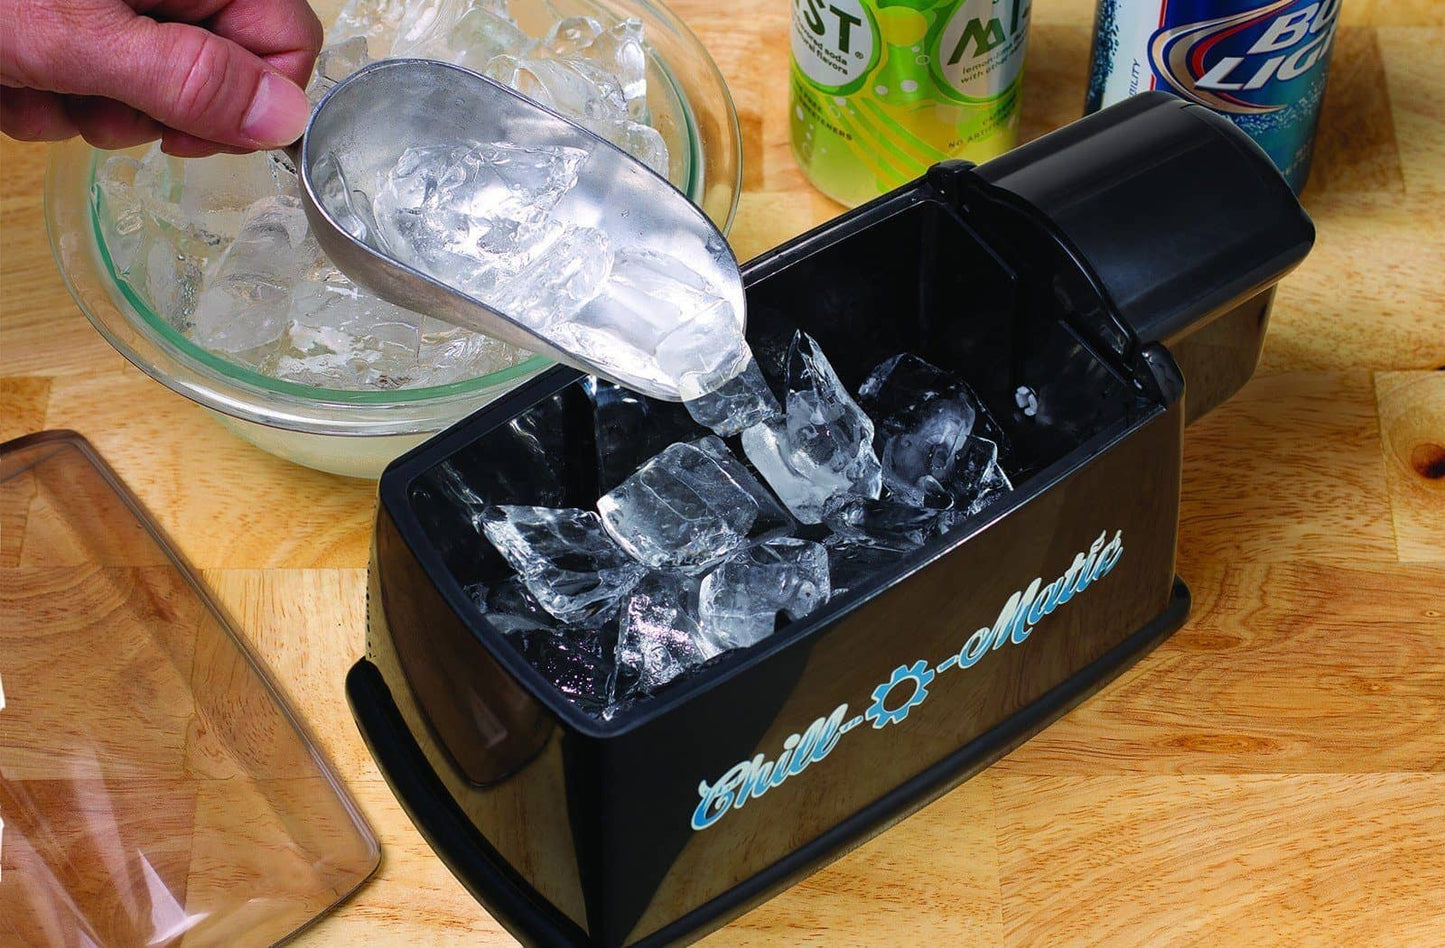 HyperChiller V2 Rapid Beverage Cooler